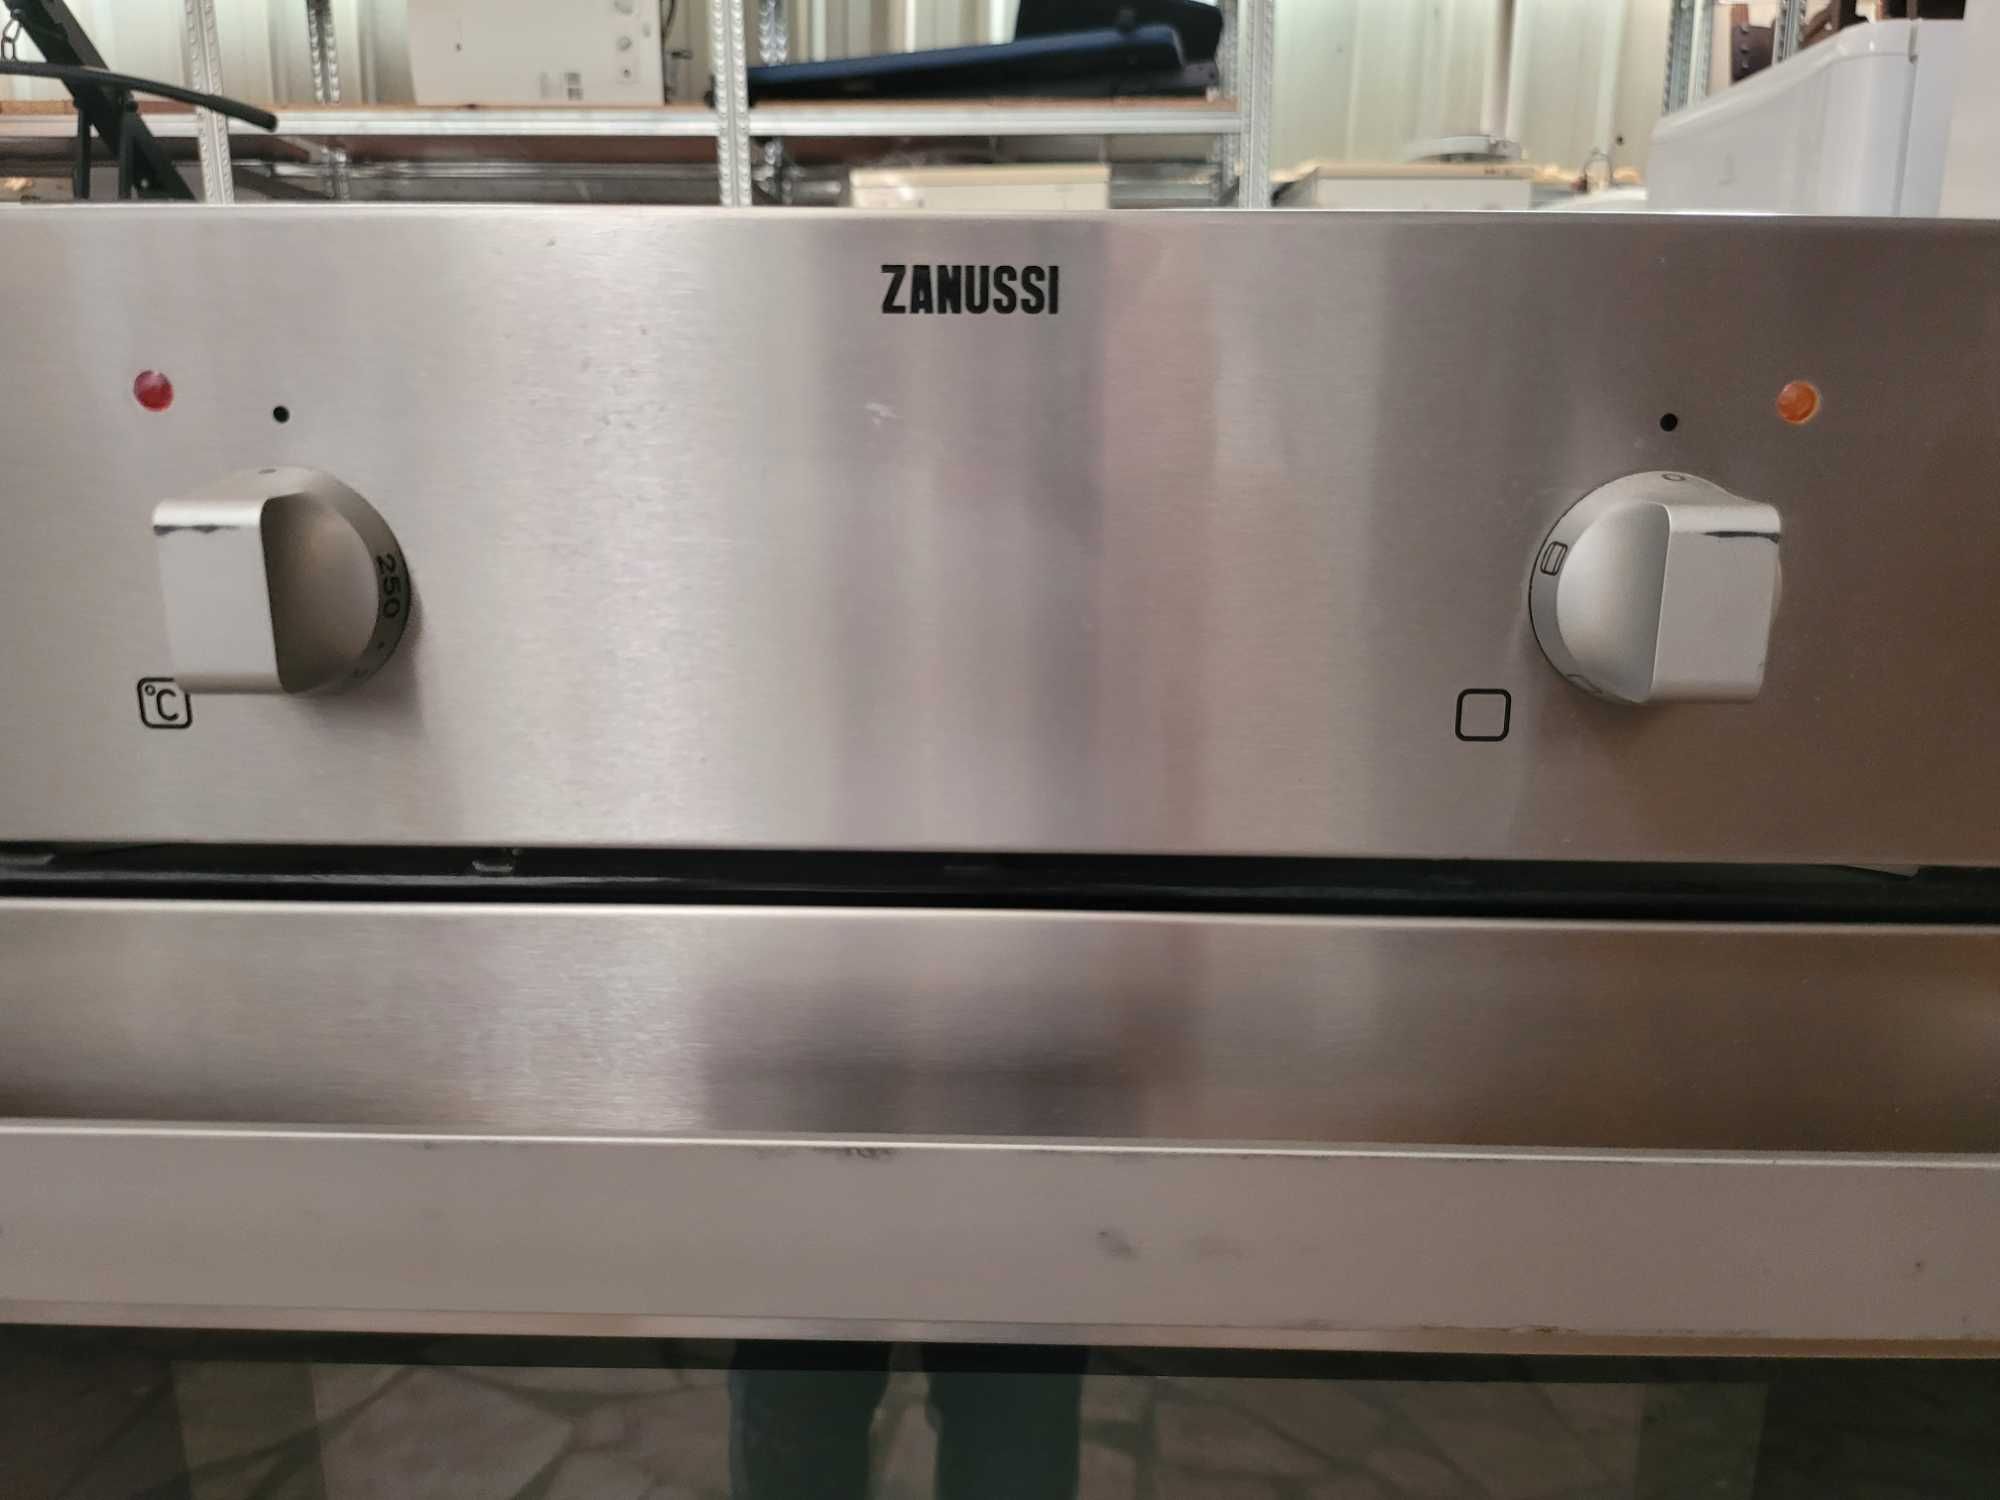 Fornos elétricos de marca Zanussi de encastrar - Quase sem uso